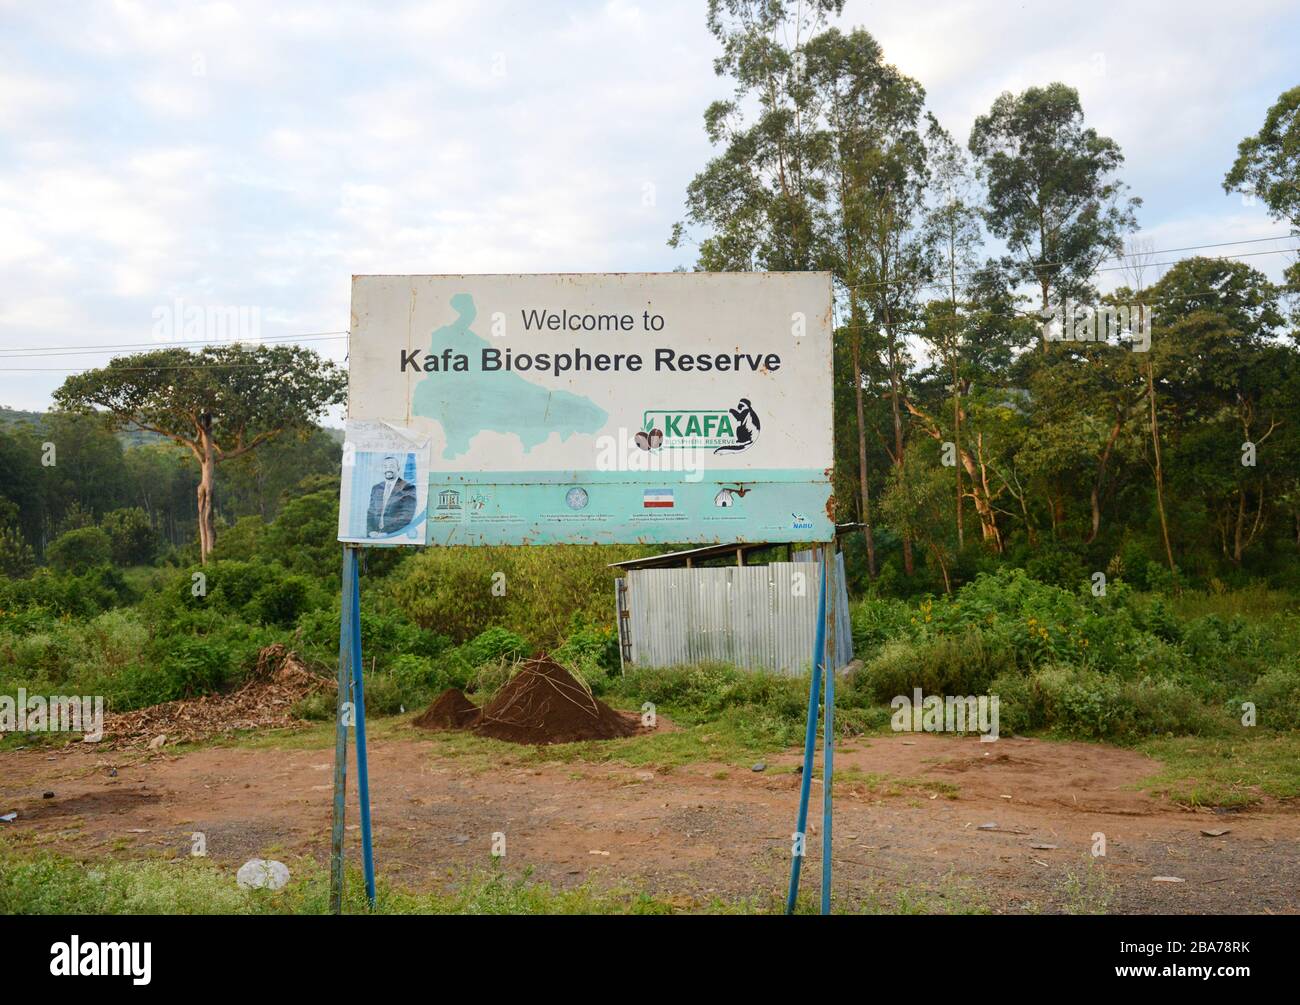 Una señal de bienvenida a la región de Kafa en Etiopía. Foto de stock